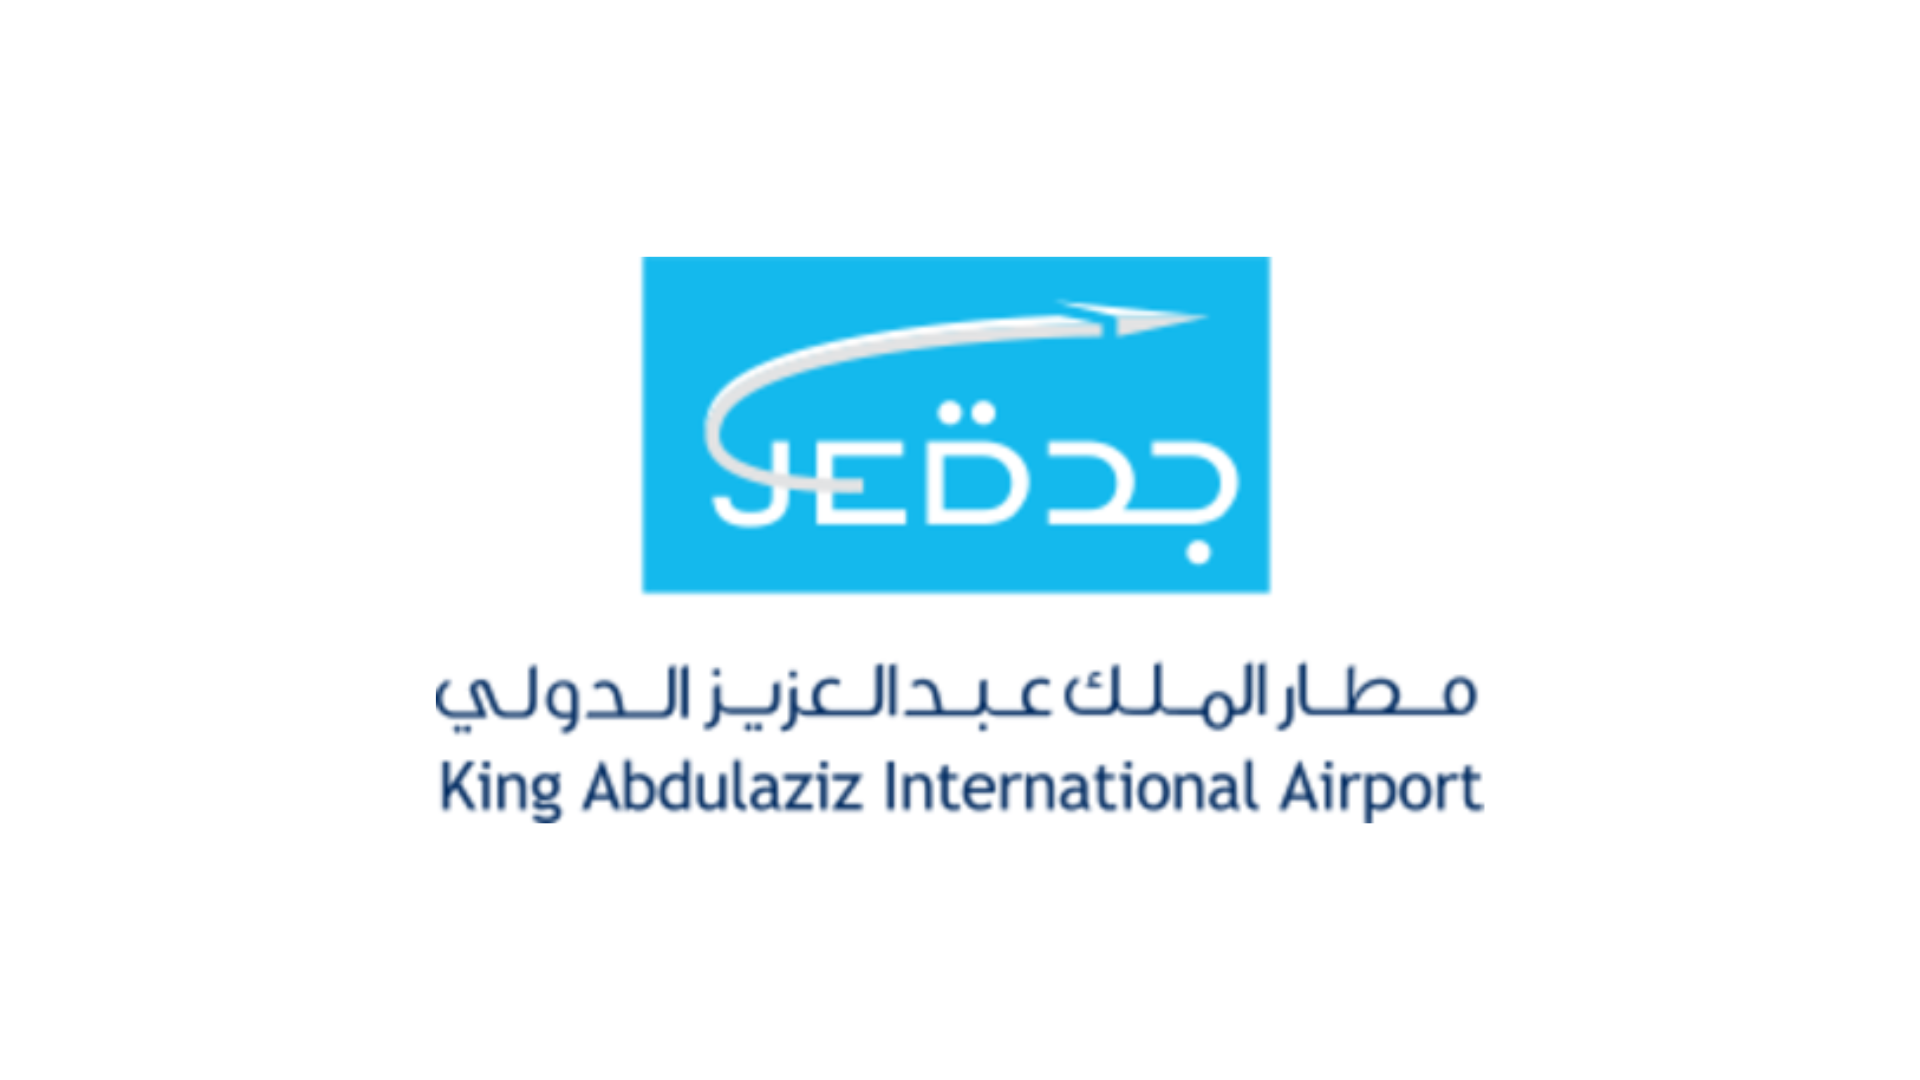 King Abdulaziz airport